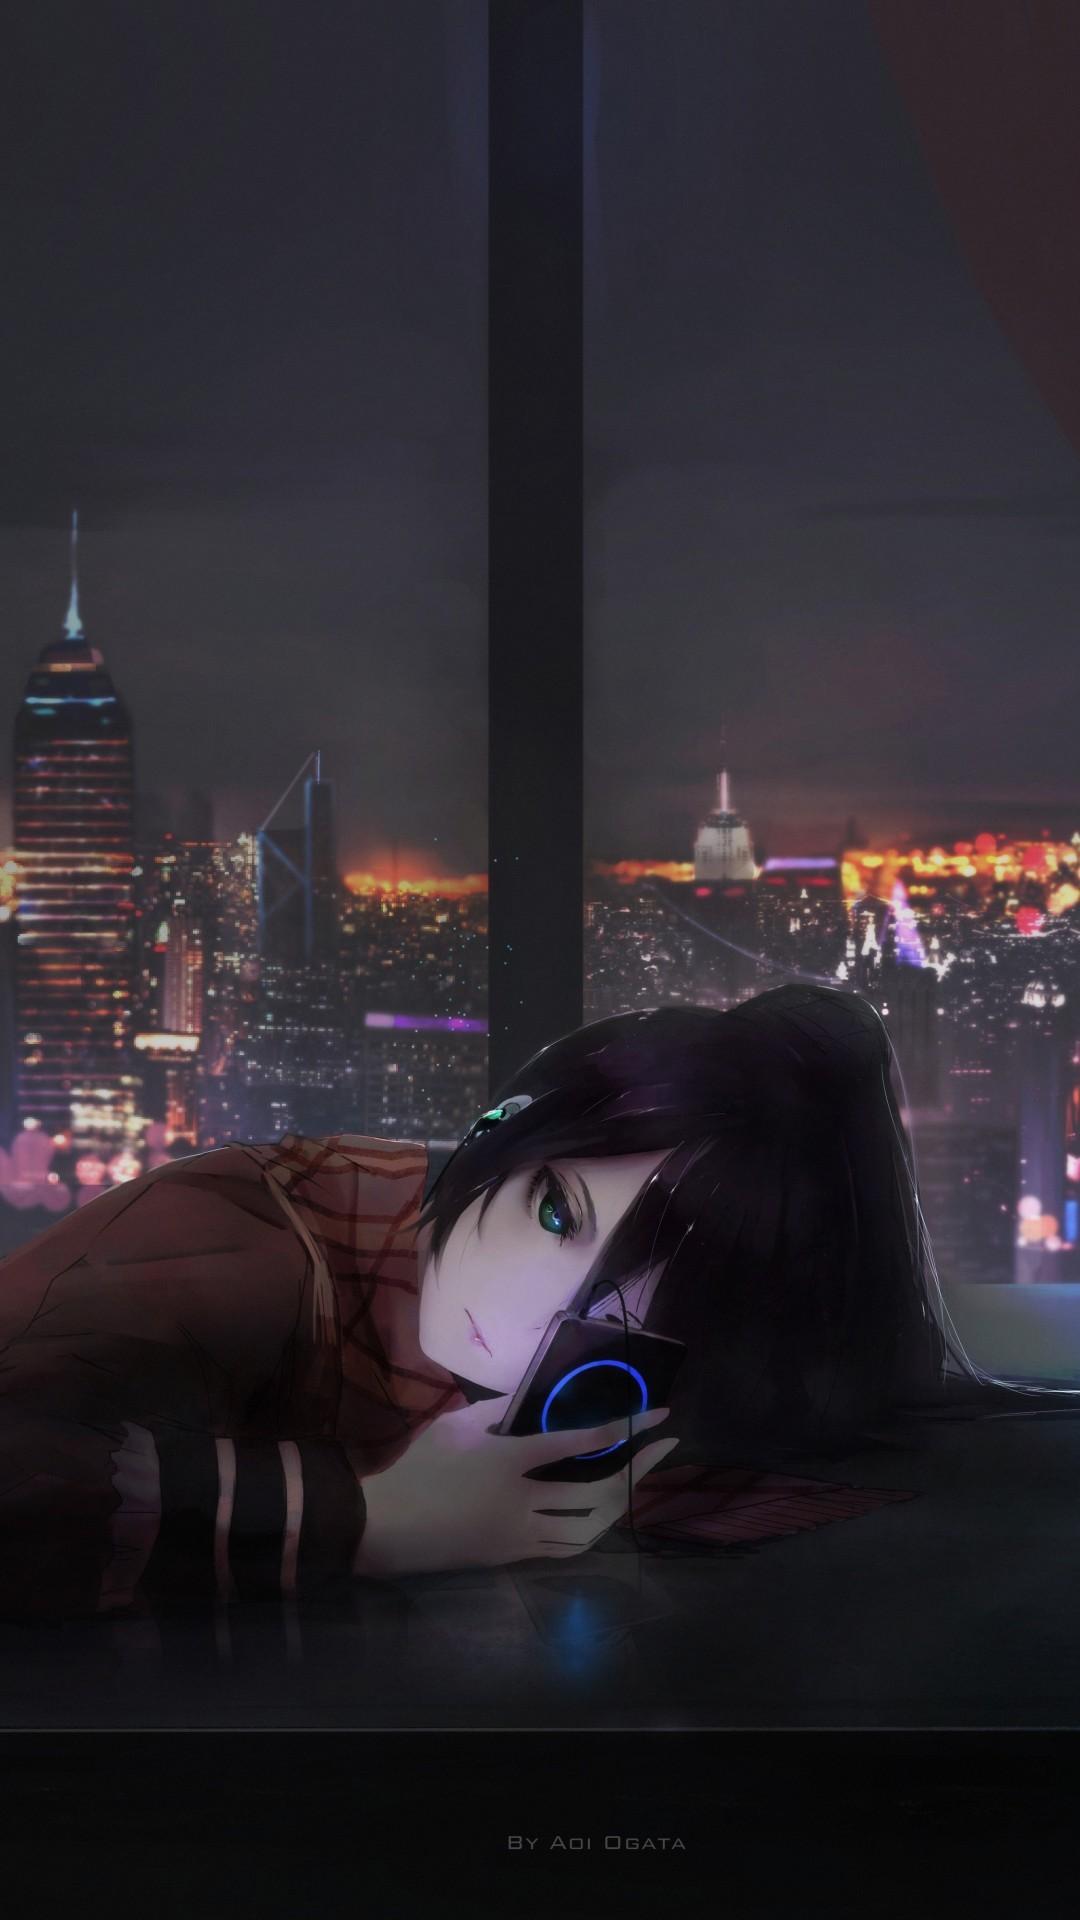 Sad Anime Girl Aesthetic Wallpaper